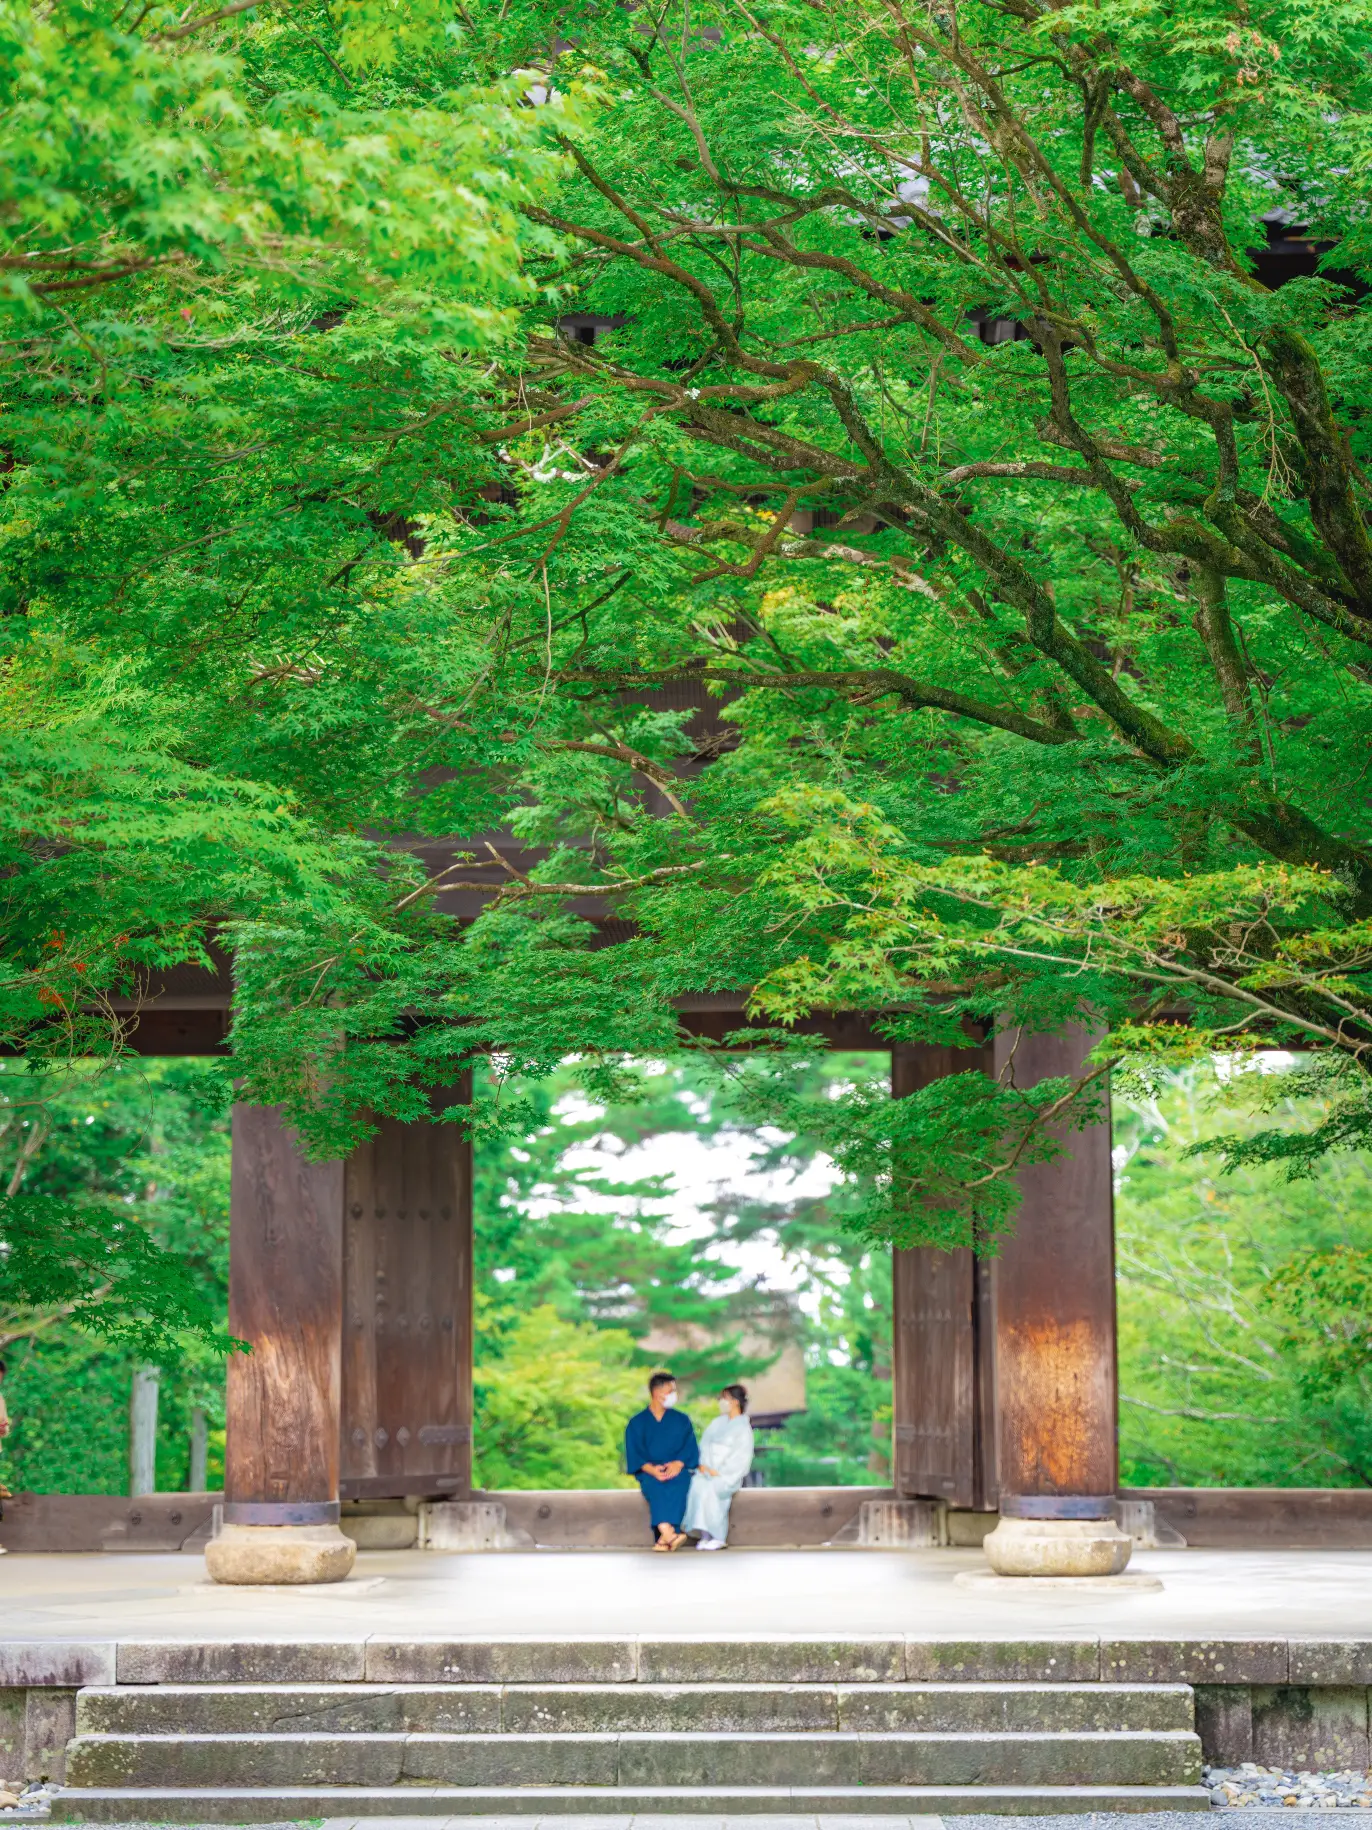 【死ぬまでに絶対行きたい日本の風景】南禅寺@京都の画像 (1枚目)